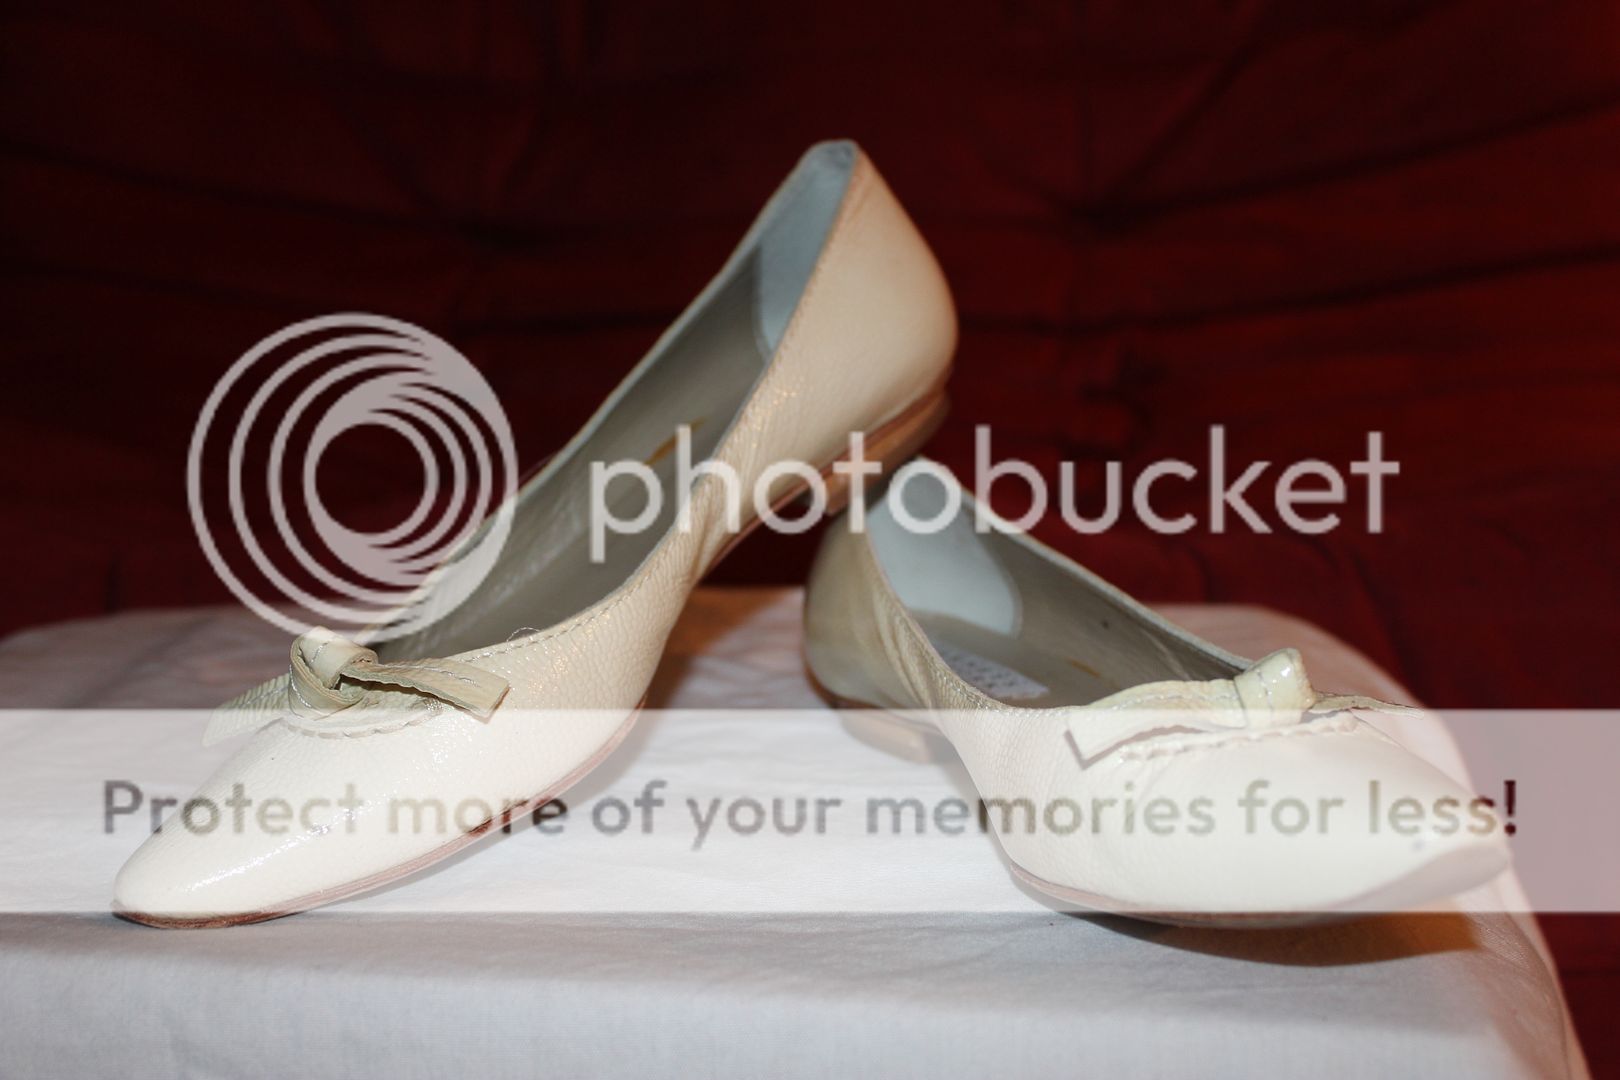 BARNEYS New York Women Flat Ballet Shoes Mouse Sz 6.5  